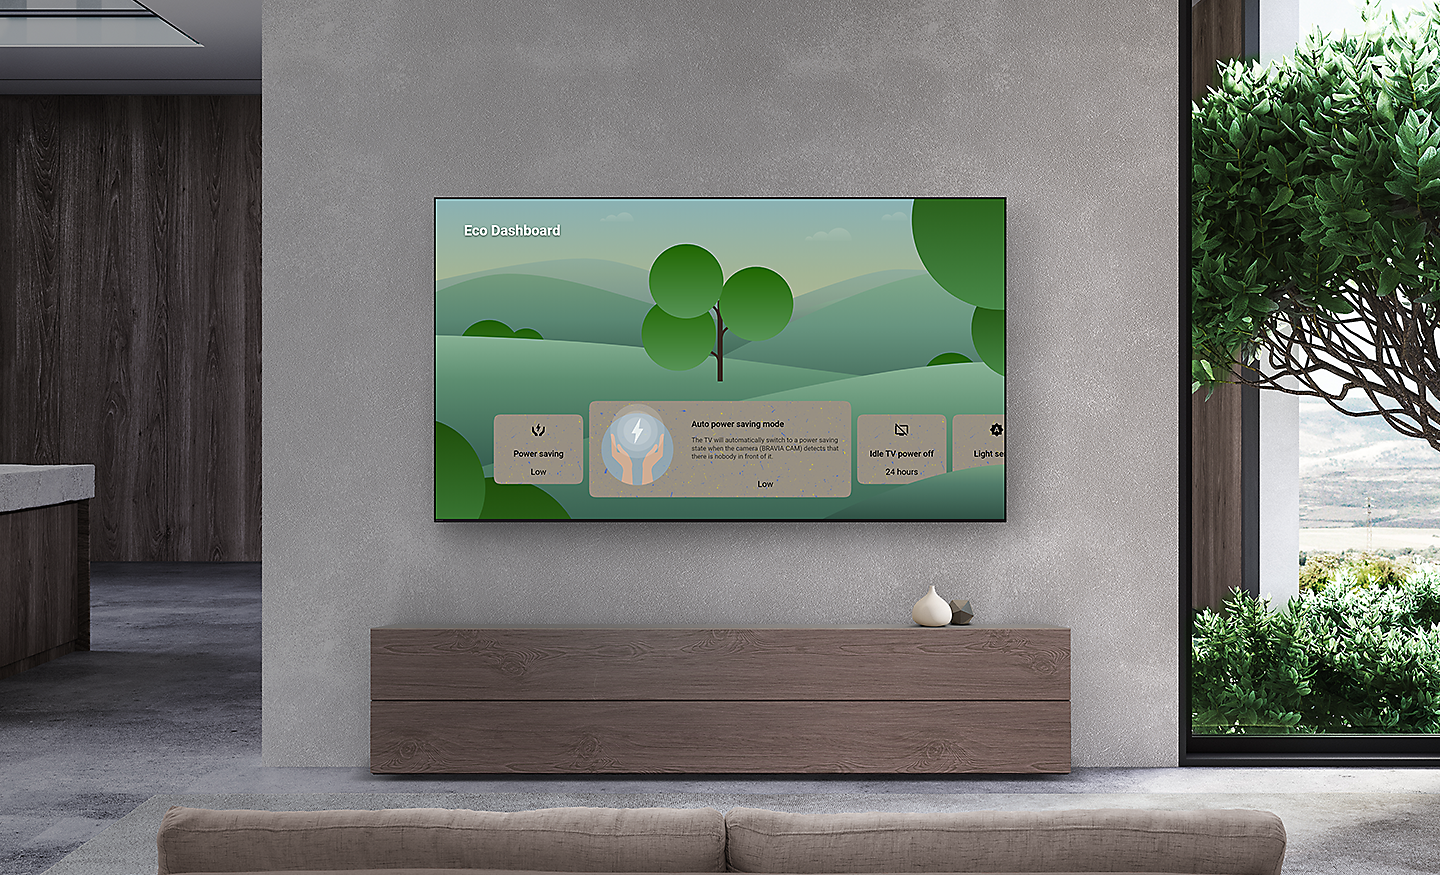 Obývací pokoj s televizorem BRAVIA na stěně ukazující na obrazovce panel Eco Dashboard